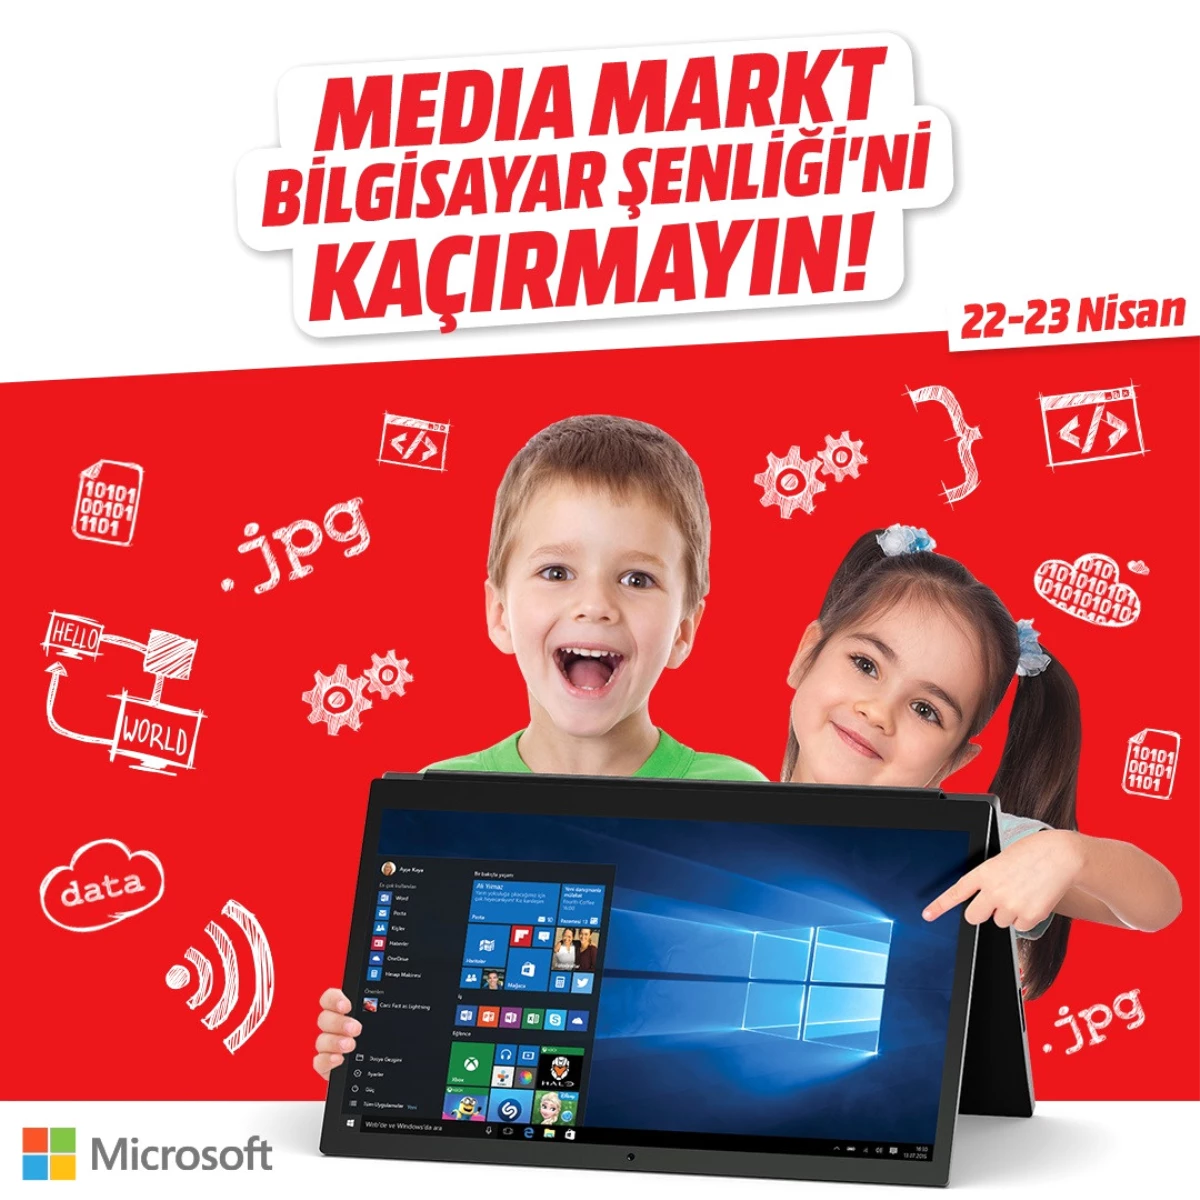 Mediamarkt ve Dünya Devi Microsoft İş Birliği ile 23 Nisan Şenliği